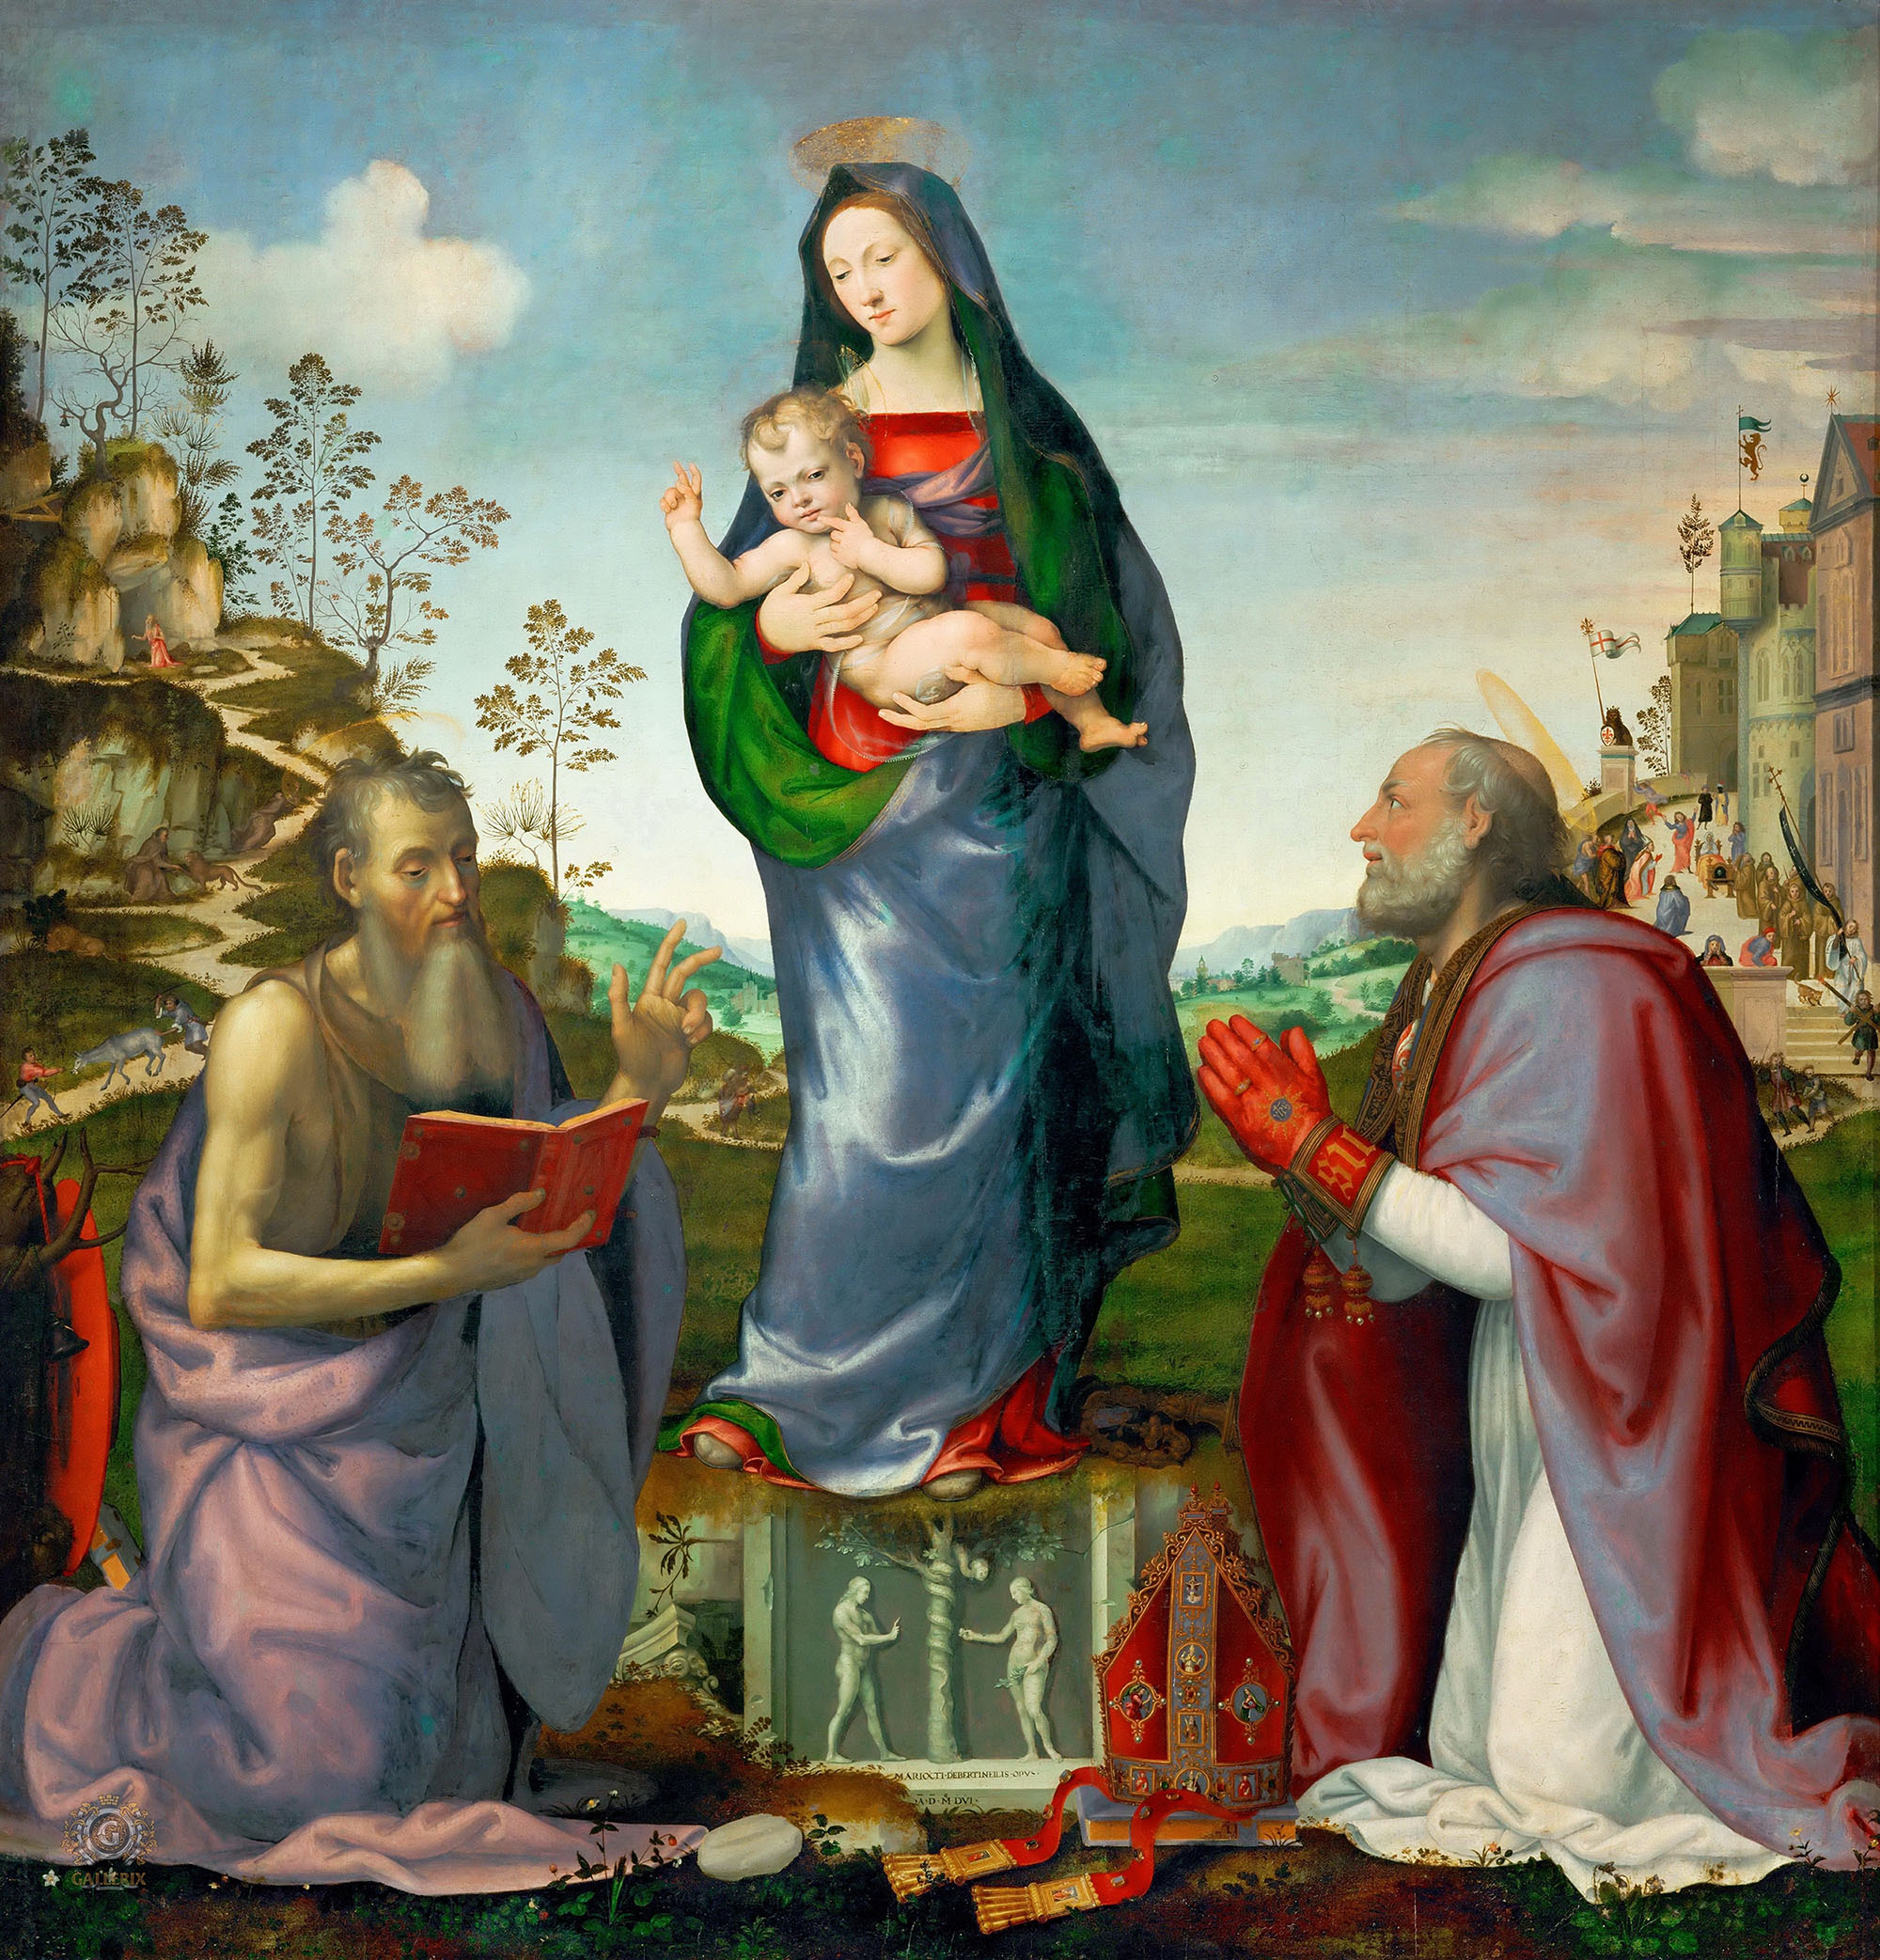 Мариотто Альбертинелли. "Мадонна с Младенцем и со святыми Иеронимом и Зиновием". 1506.